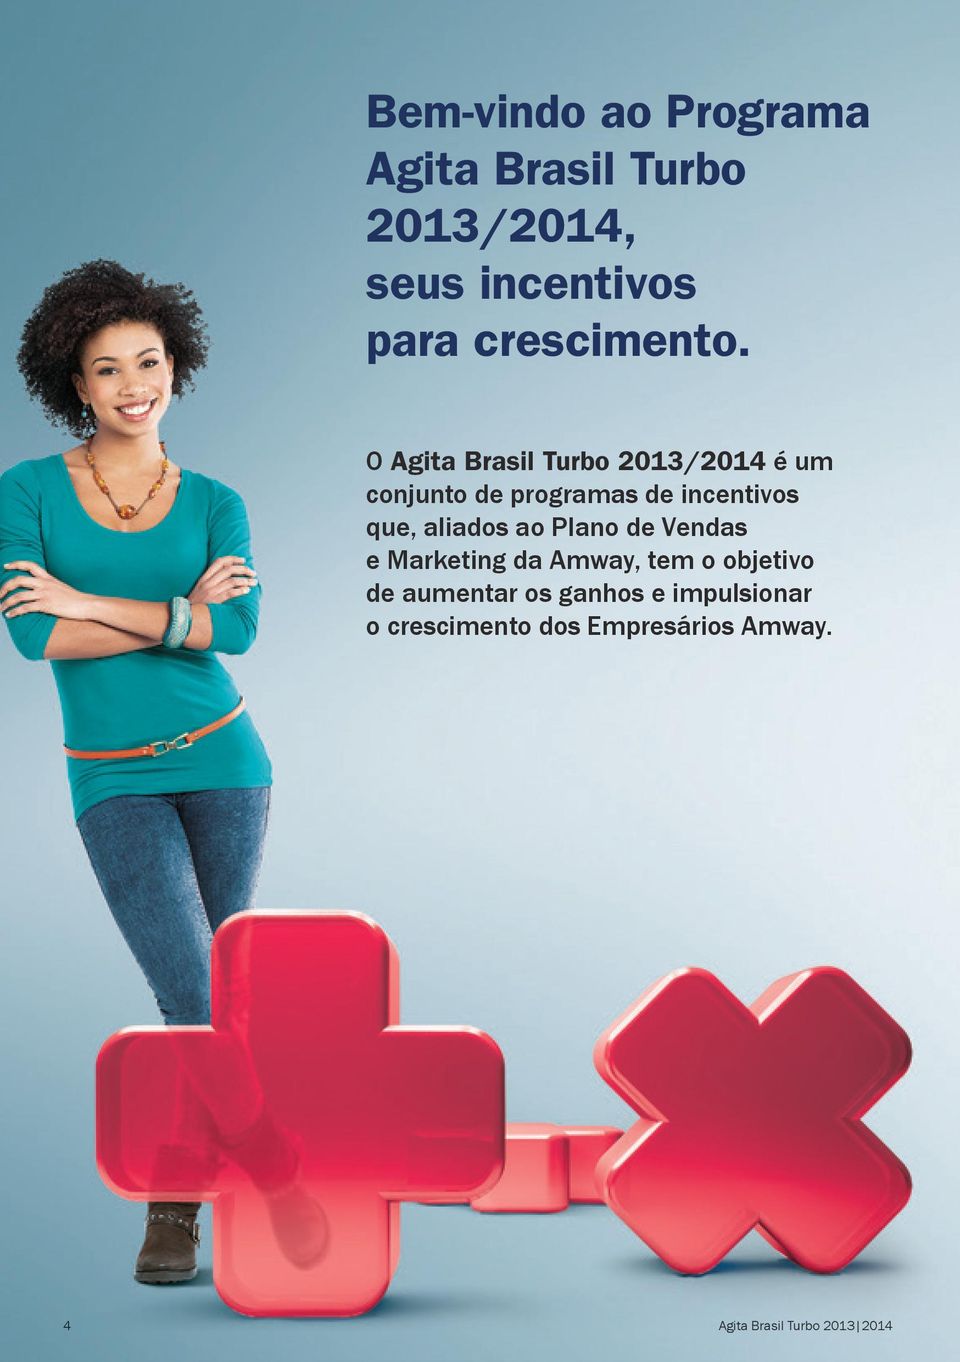 O Agita Brasil Turbo 2013/2014 é um conjunto de programas de incentivos que,